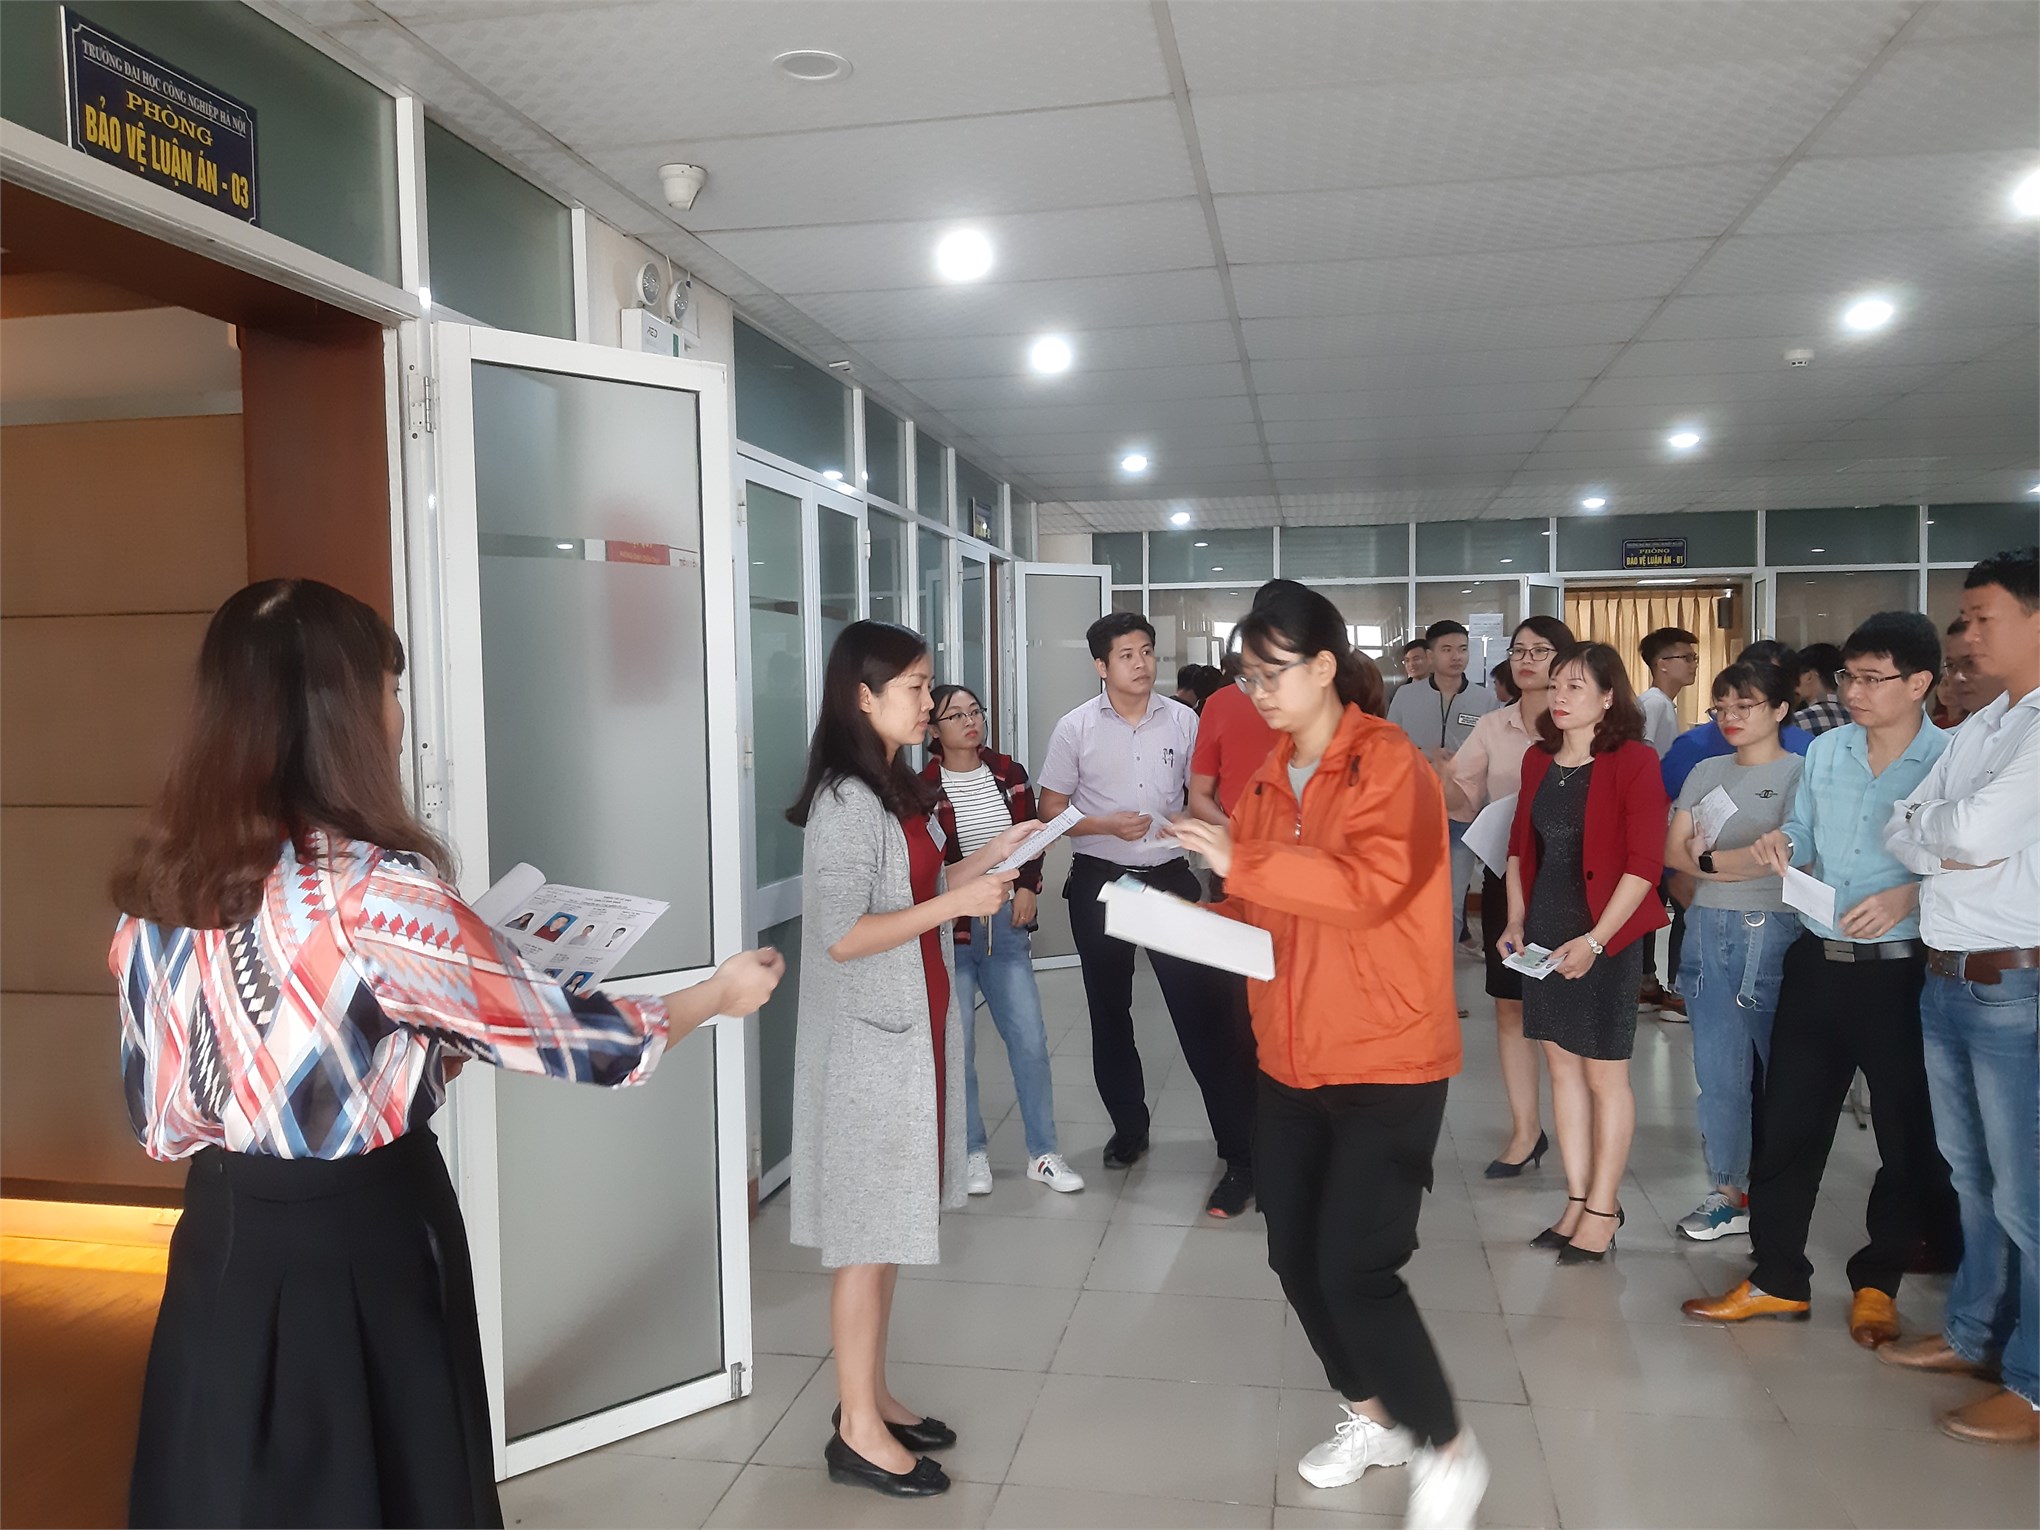 Tổ chức thi tuyển sinh đào tạo trình độ thạc sĩ đợt 2 năm 2020 trường Đại học Công nghiệp Hà Nội.